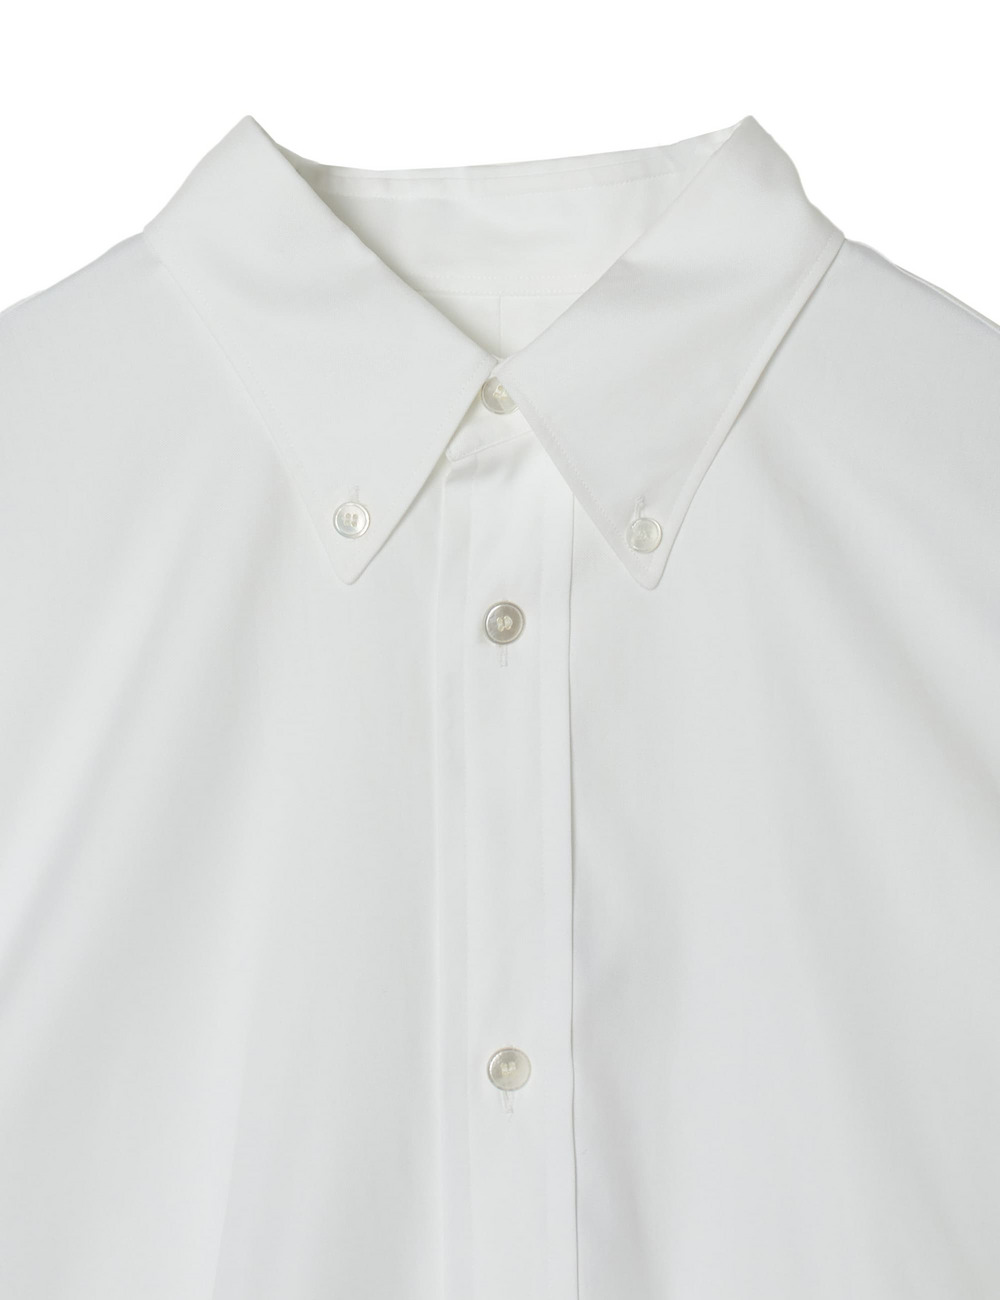 【MEN】オックスフォードボタンダウンシャツ 詳細画像 ホワイト 3